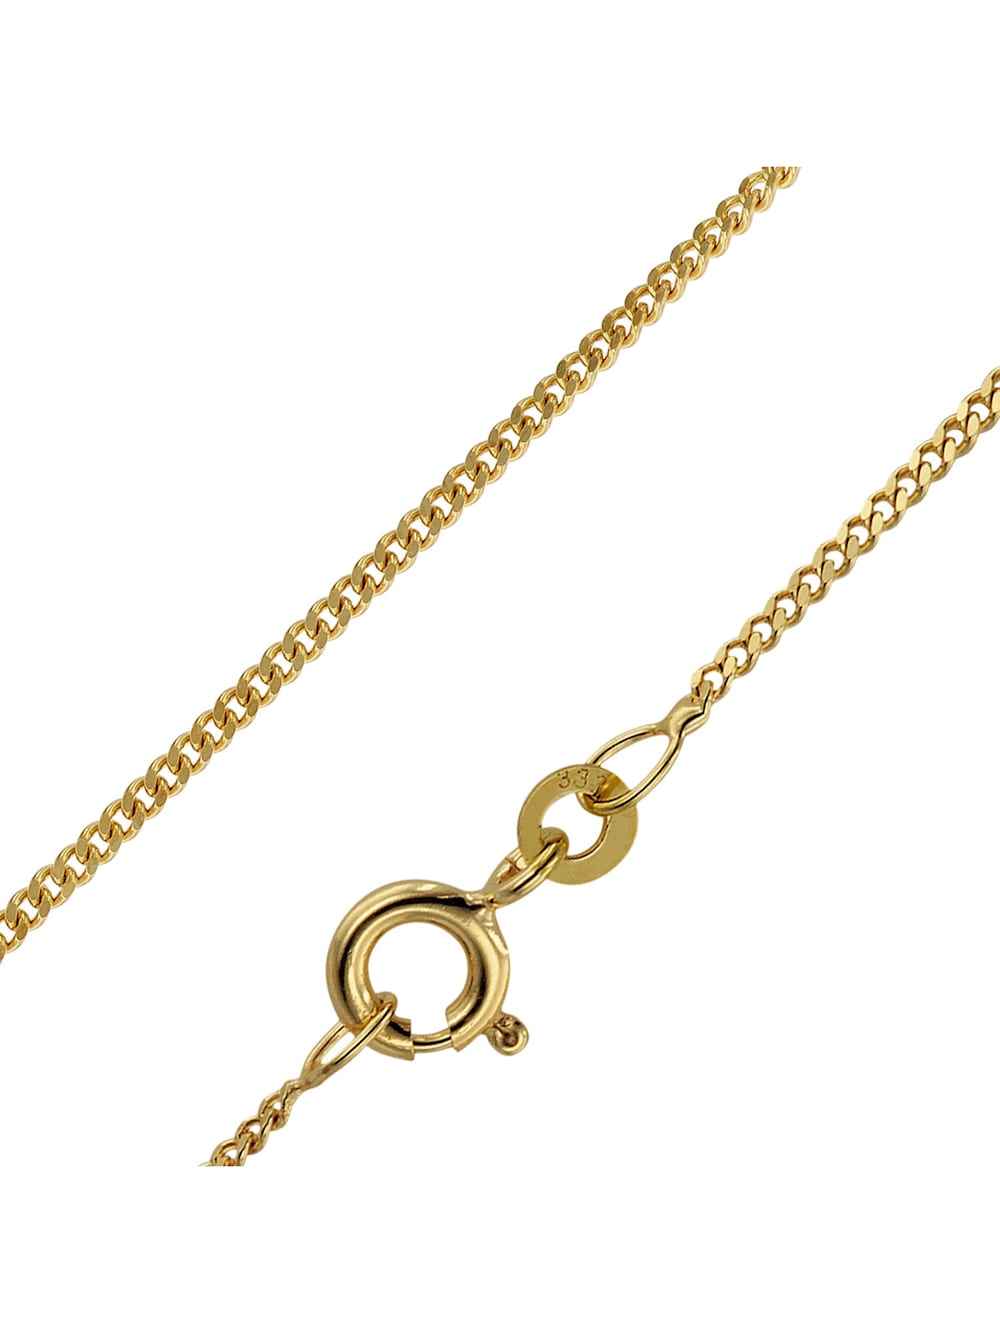 22717 Schlangenkette 333 Gelbgold 1,4 mm 42 cm Gold Kette Halskette Goldkette 